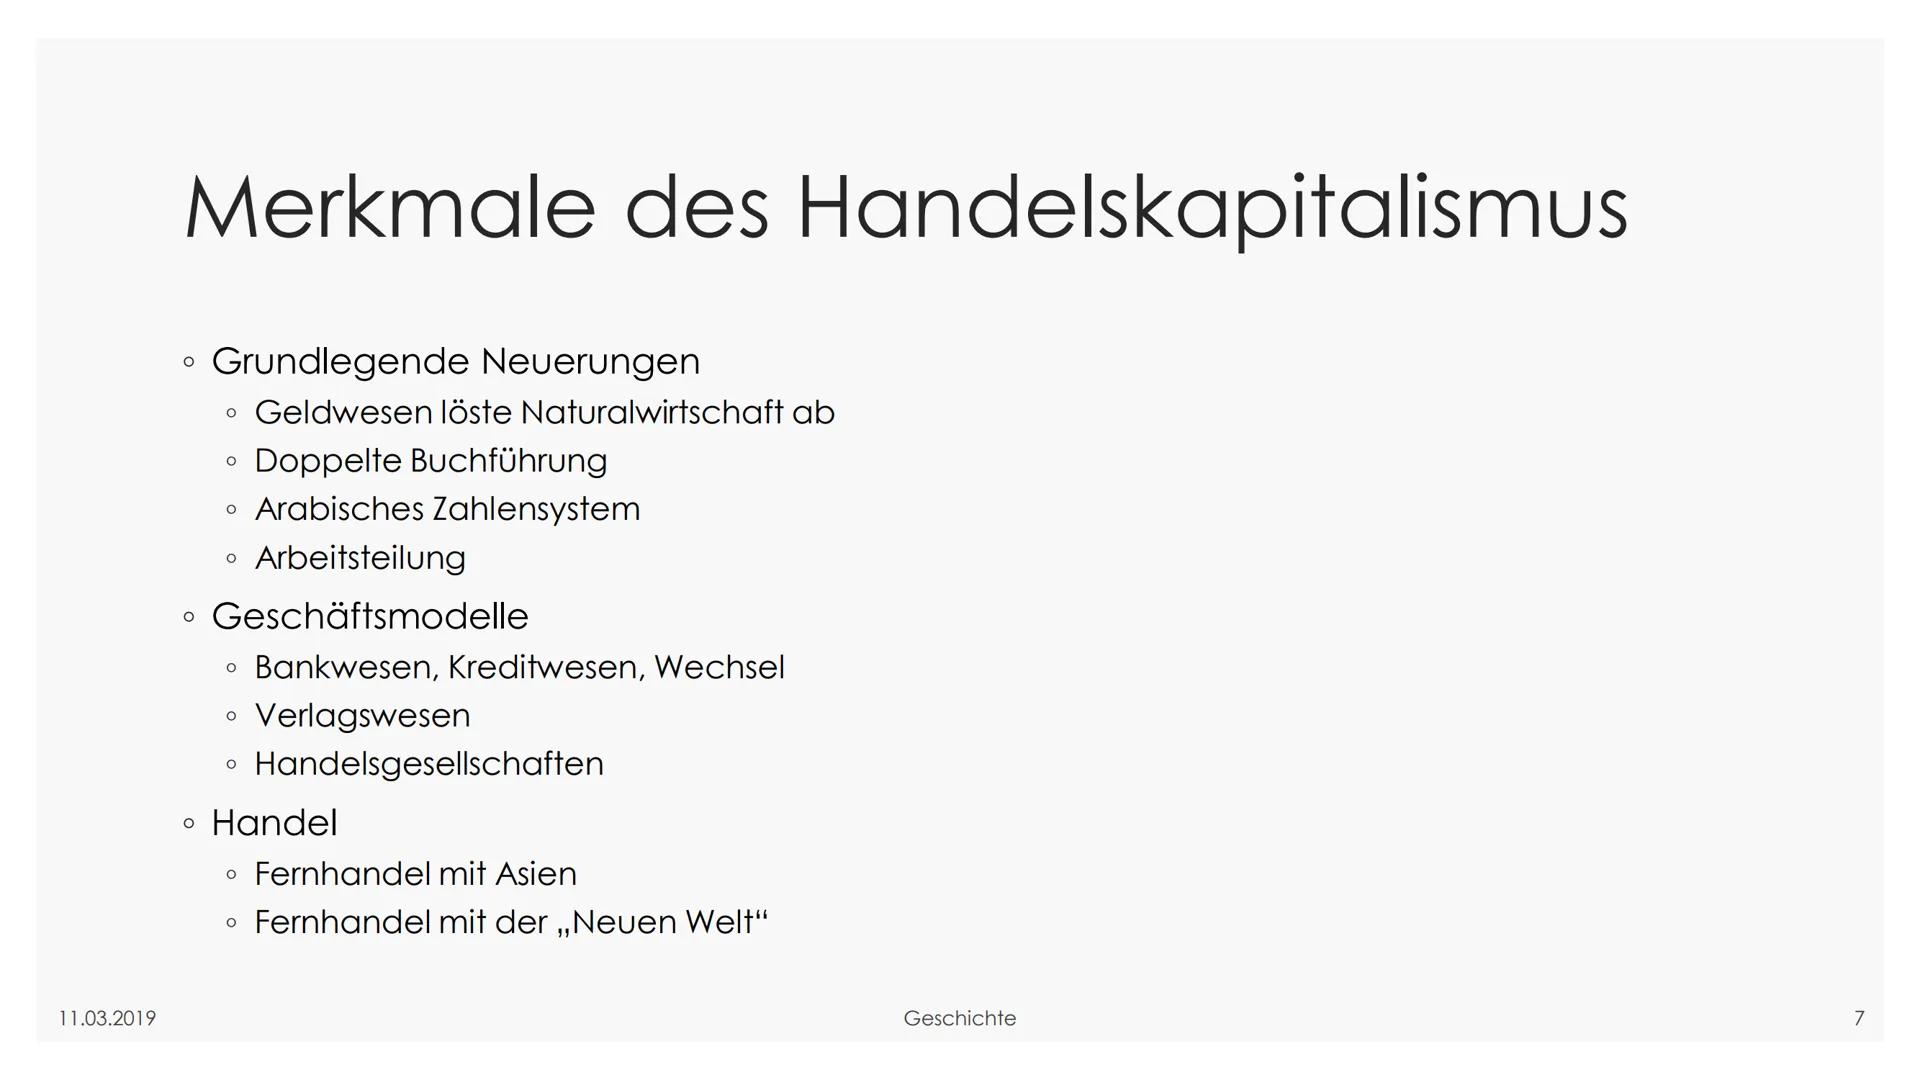 We
11.03.2019
Der Wandel zum
Handelskapitalismus - Ein
Gewinn für Jedermann?
Geschichte
GFS im Fach Geschichte
श्री श्रीष्ट 11.03.2019
Glied